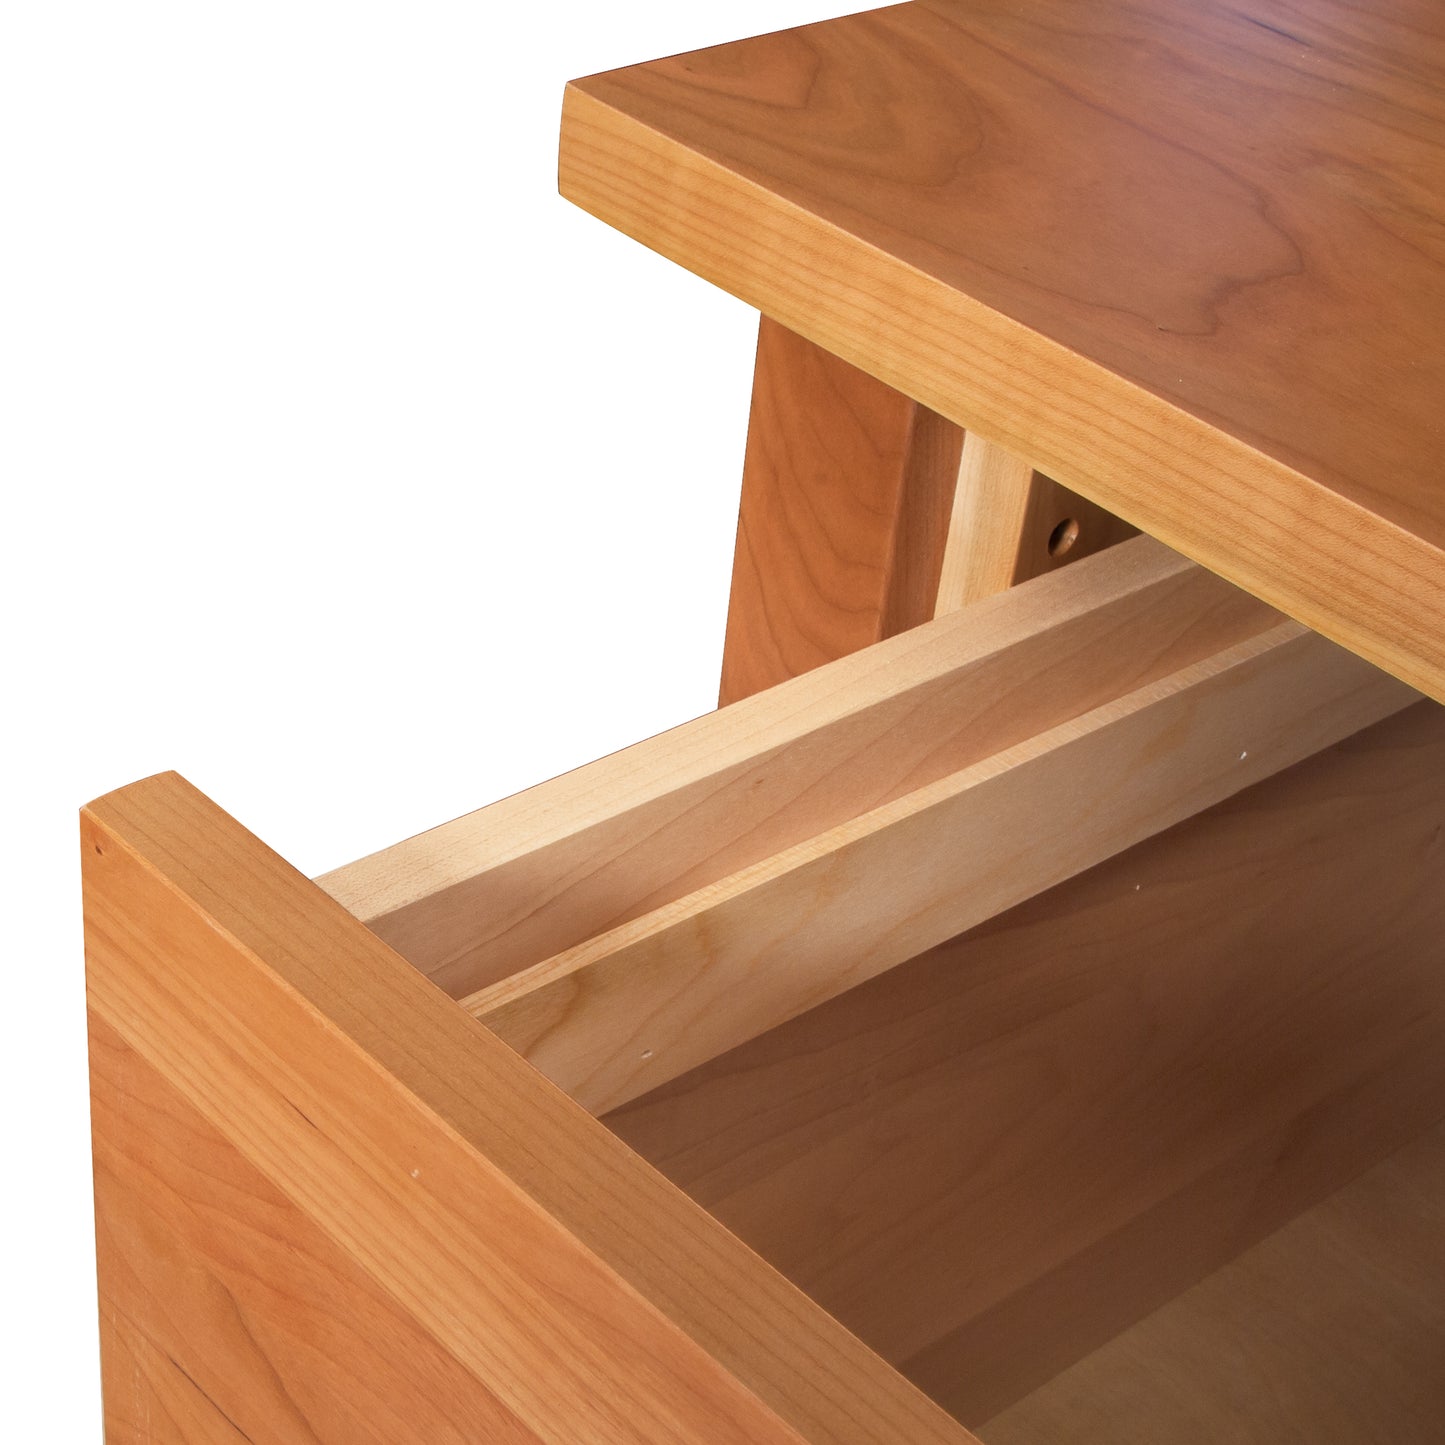 A close up of a classic Lyndon Furniture Large Wood Flare Leg Executive Desk.